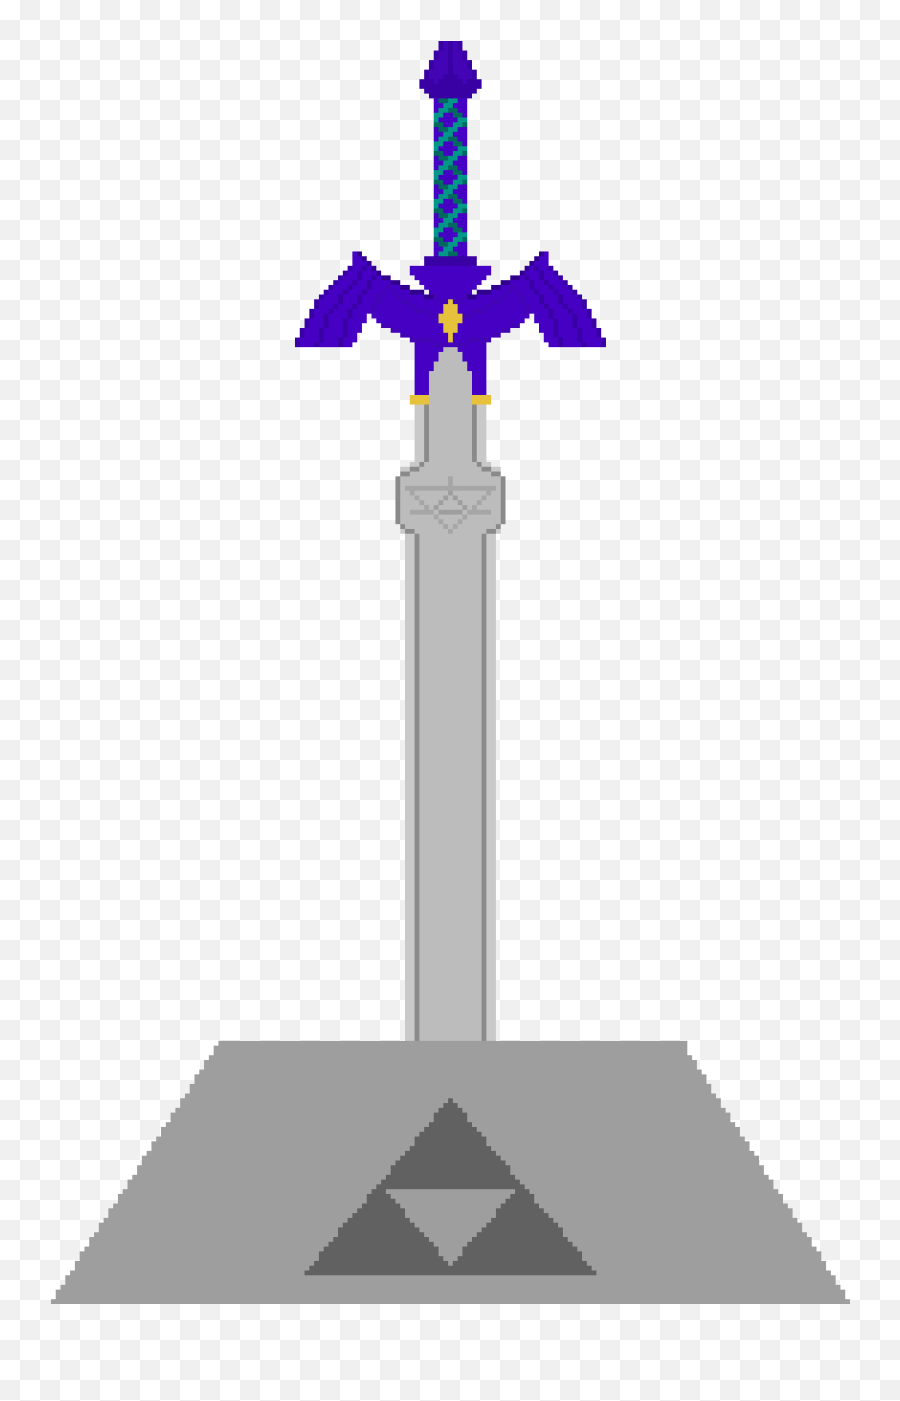 Pixilart - Master Sword In Pedestal Transparent Emoji,Master Sword Png